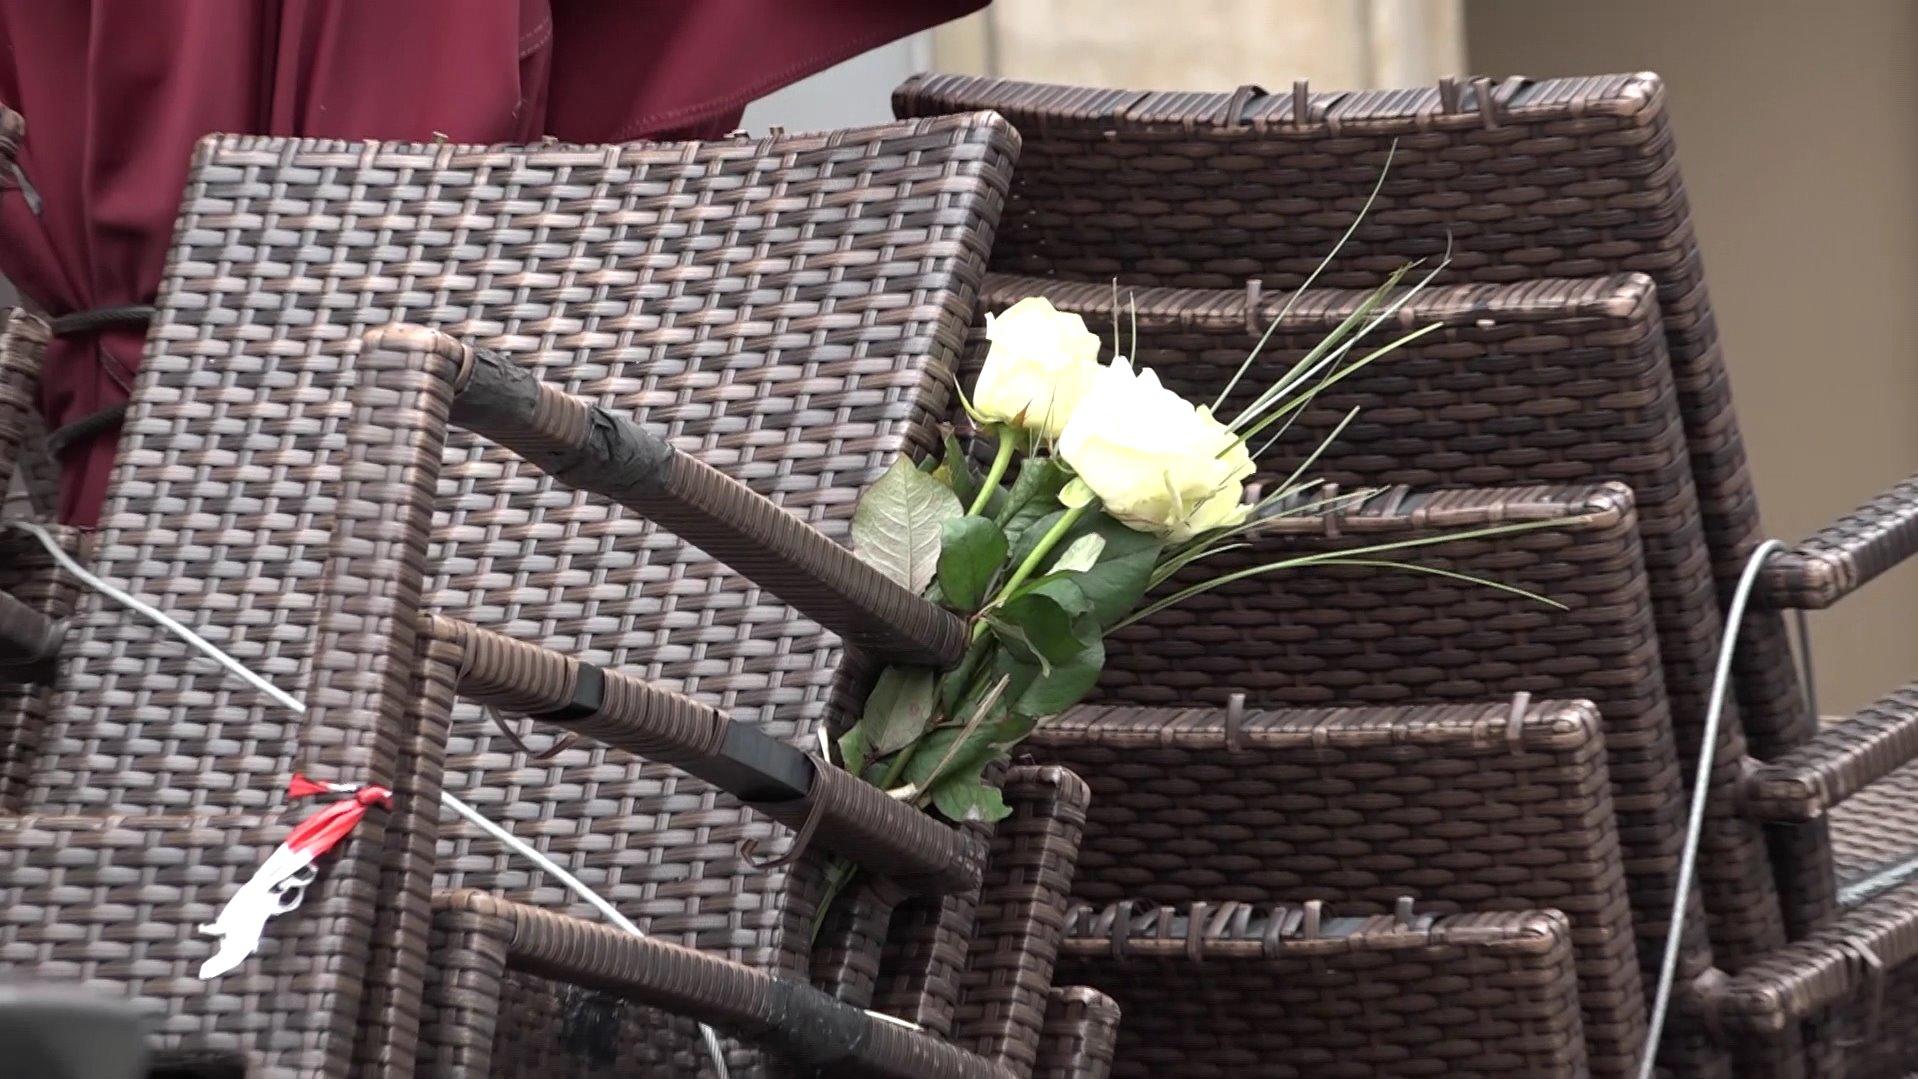 Die bayrische Gemeinde Lichtenfels ist von der Tat tief erschüttert. Menschen haben weiße Rosen vor den Blumenladen hinterlassen - in Andenken an die getötete Floristin.